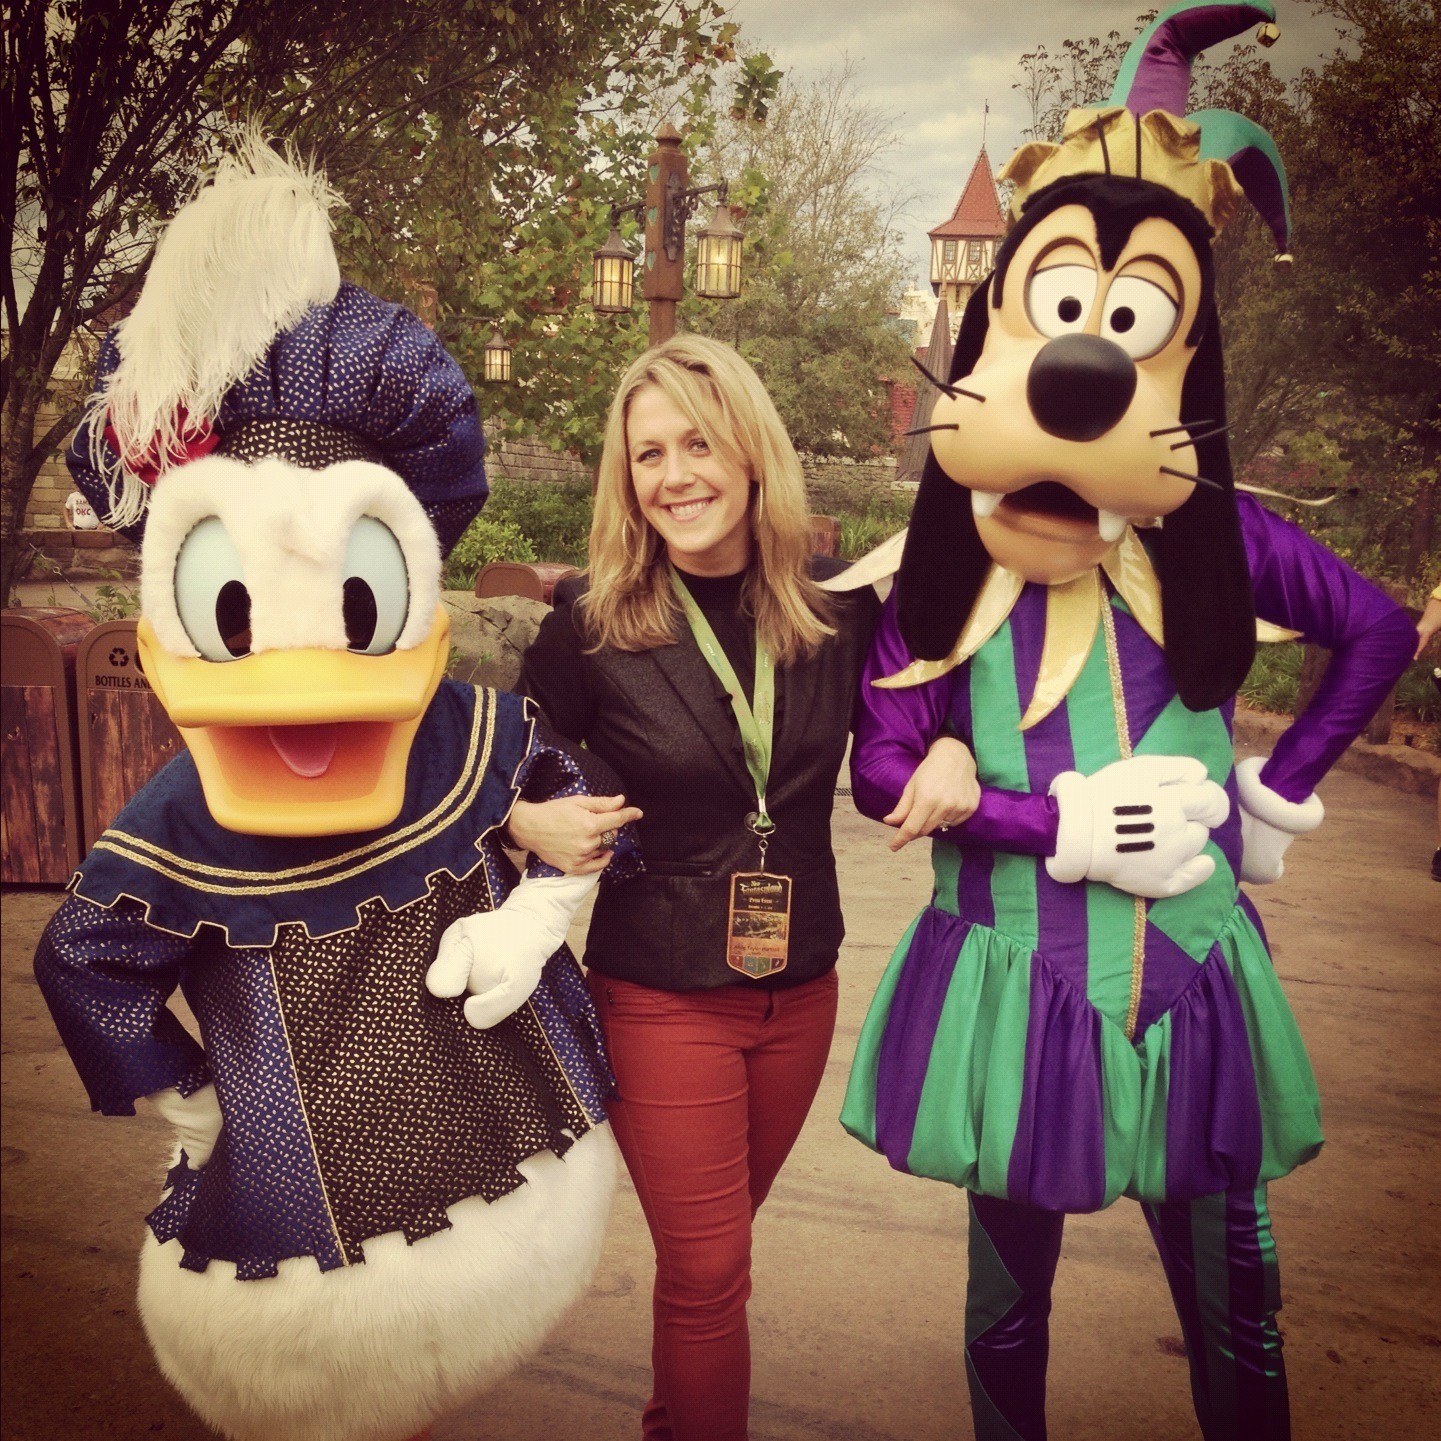 What’s New at The Magic Kingdom: New Fantasyland at Walt Disney World